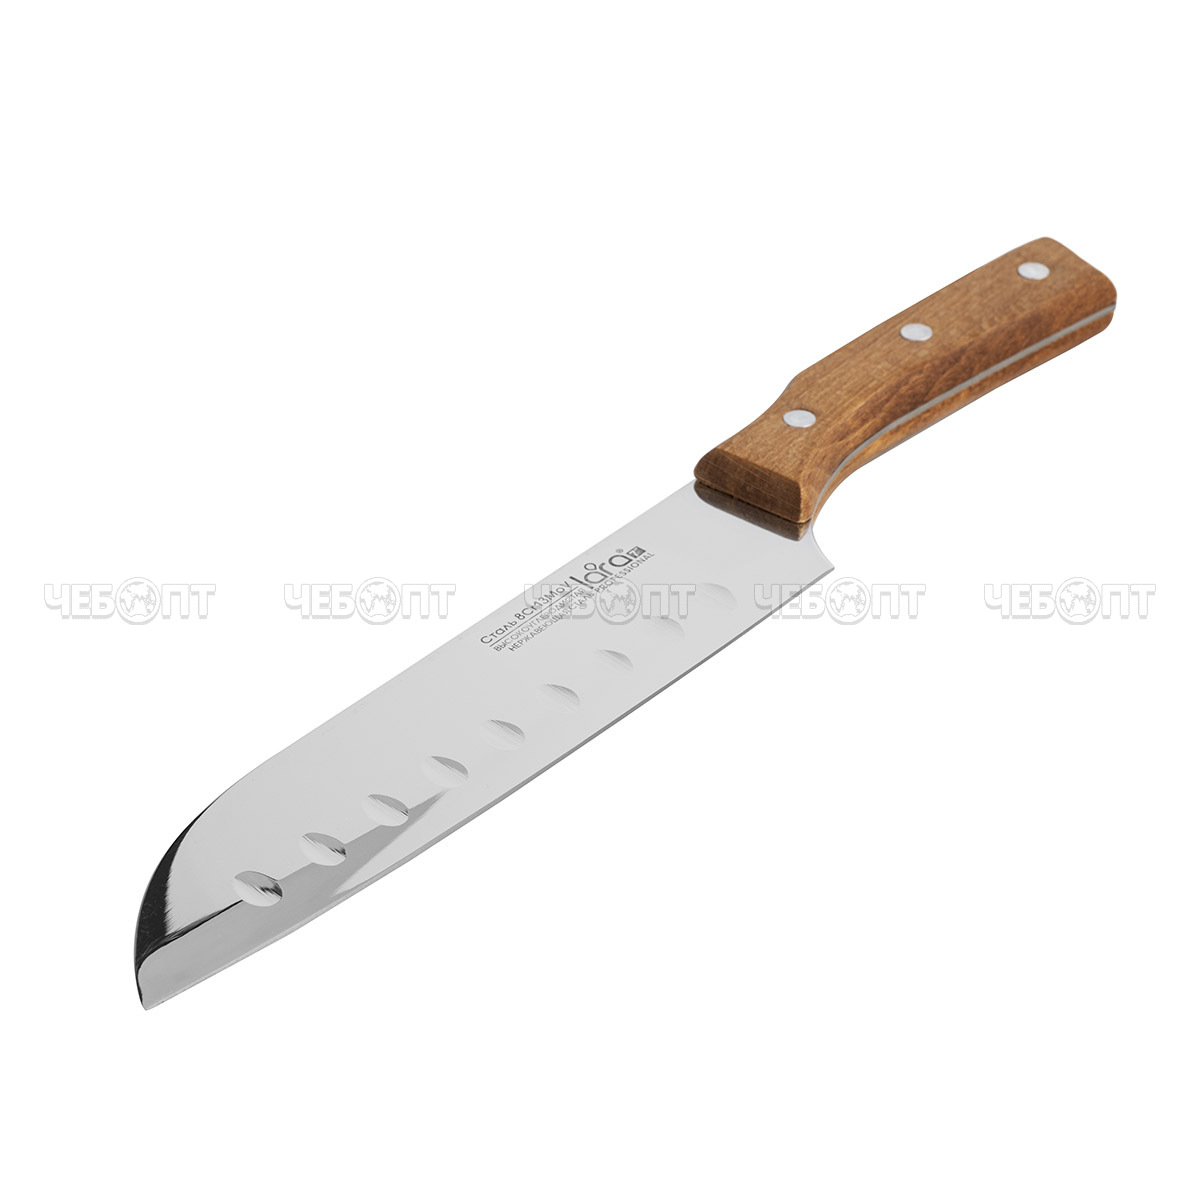 Нож поварской 17,8 см/1.8 мм, сталь LARA деревянная буковая ручка 8CR13Mov (блистер) LR05-63 [72]. ЧЕБОПТ.